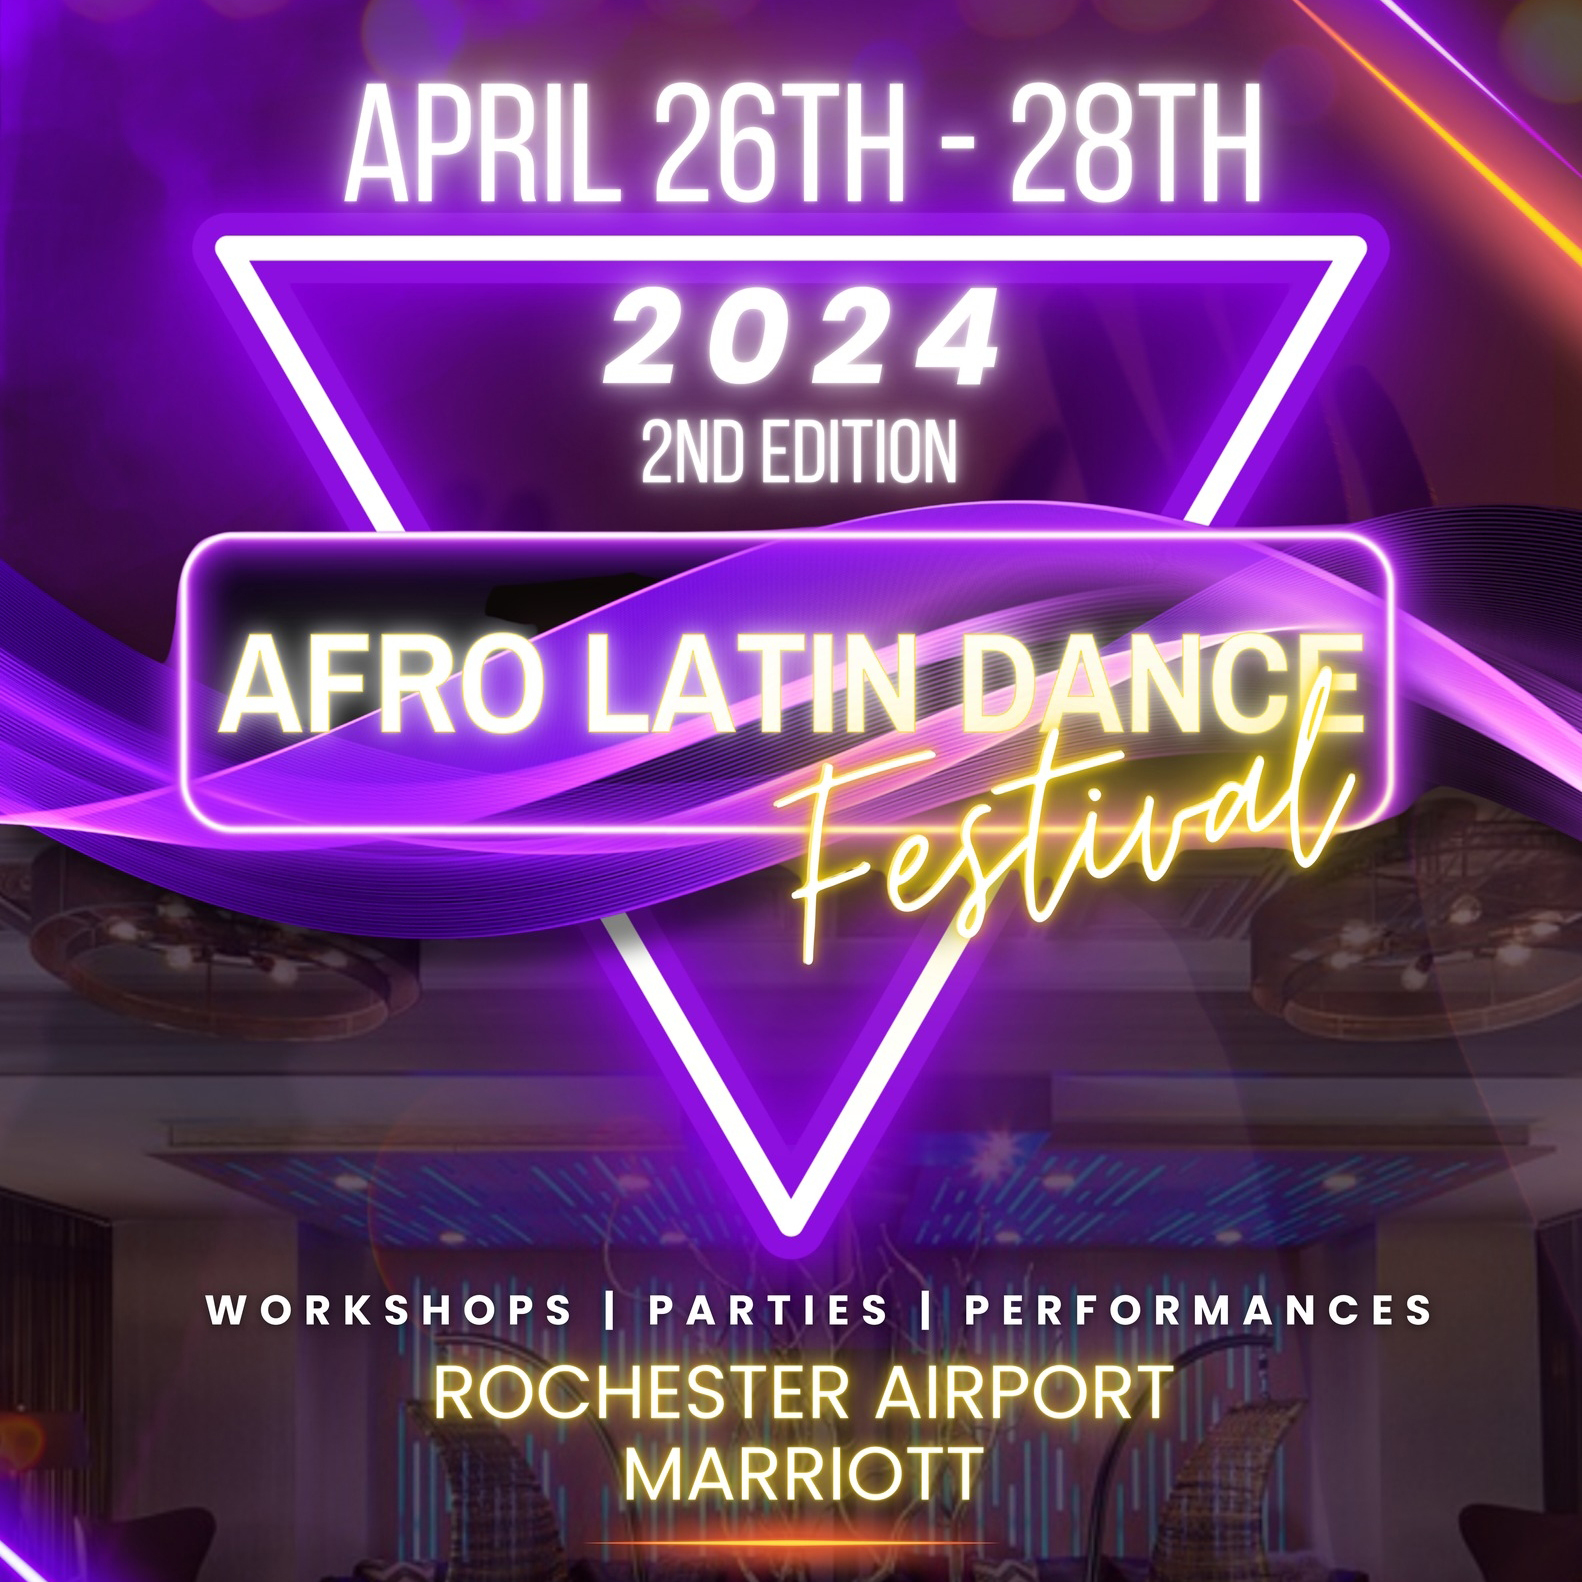 Afro Latin Dance Festival